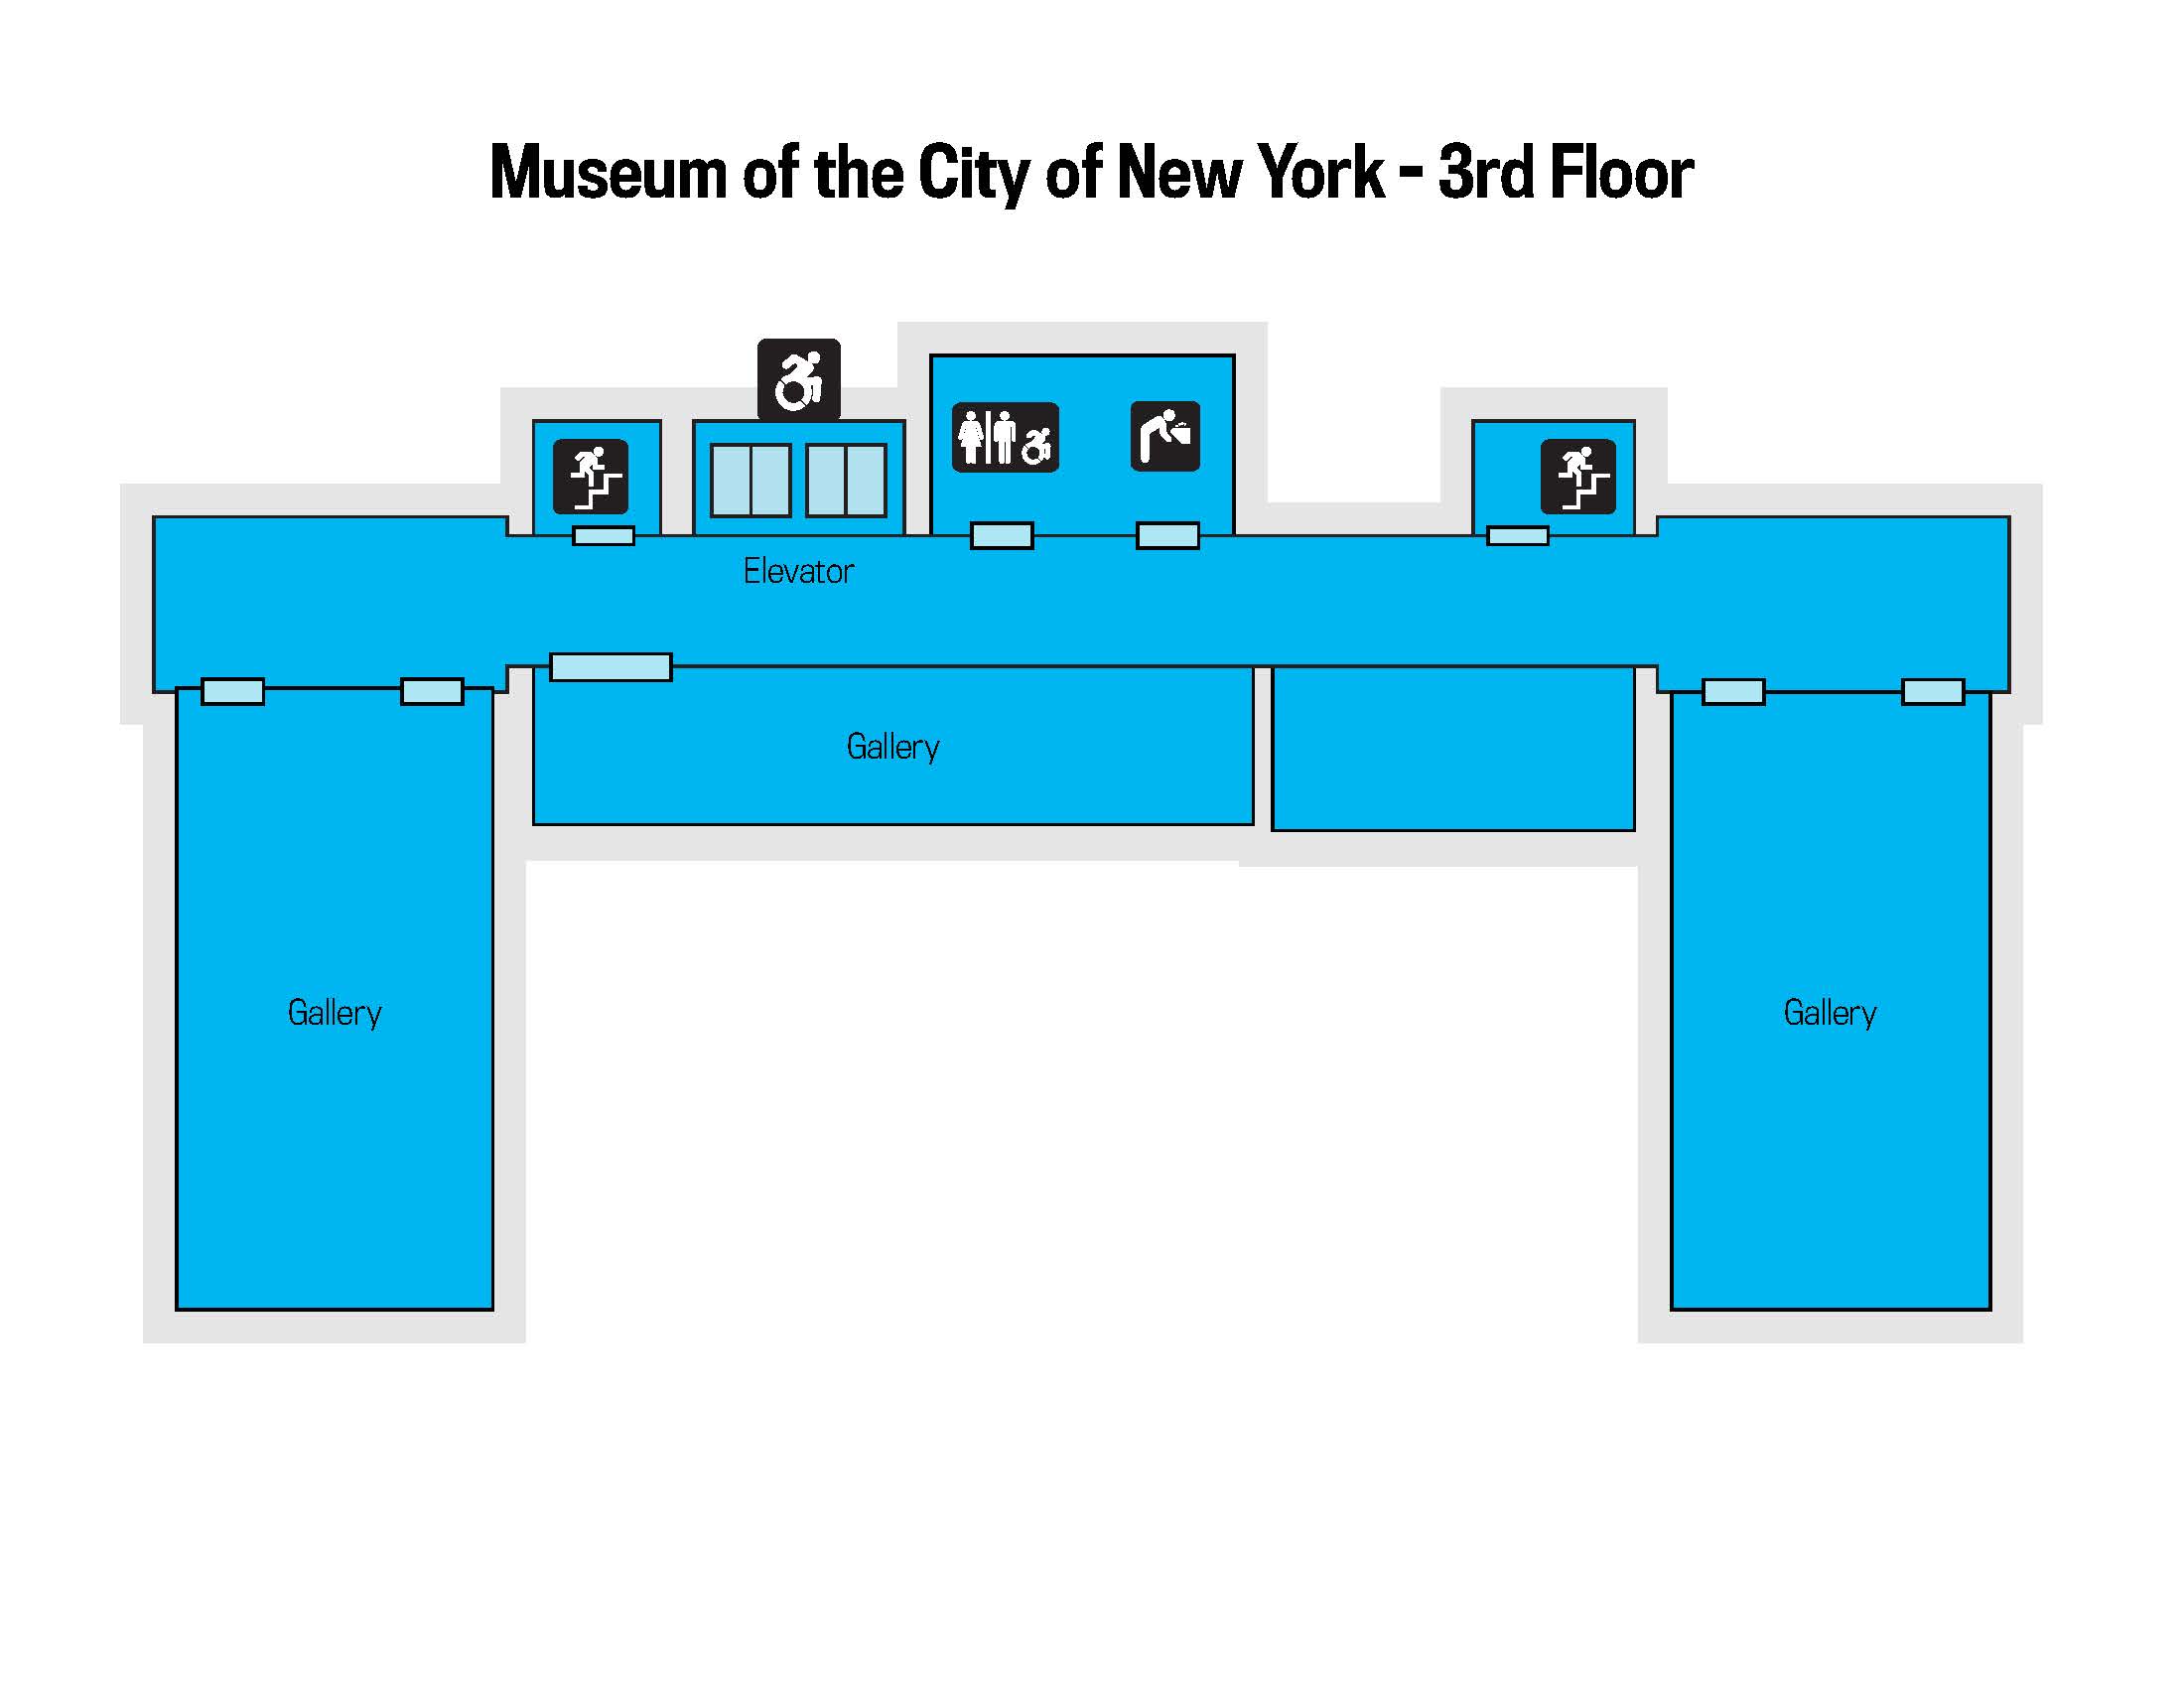 A floor plan of the museum's third floor.